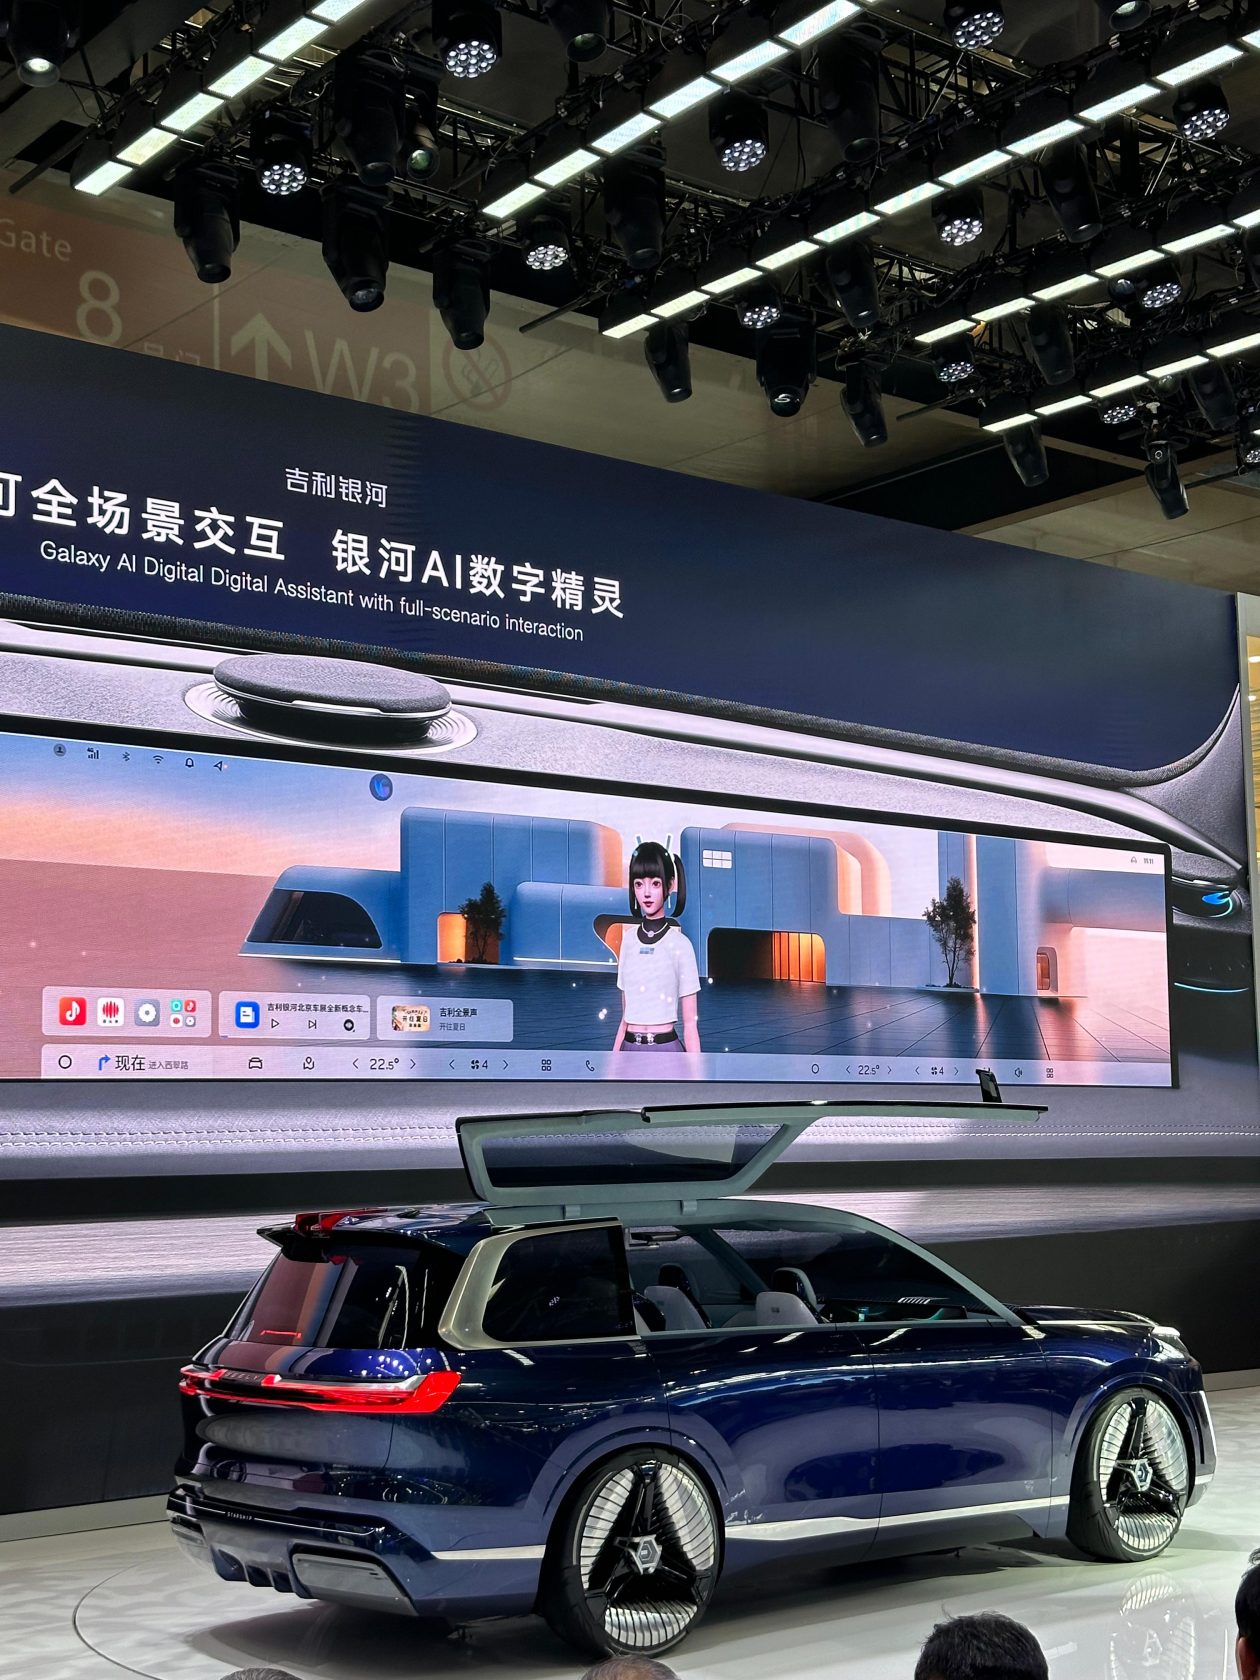 جيلي ستارشيب SUV الفاخرة الجديدة تُدشن في الصين بمحركات هجينة ثورية بمدى يتجاوز 2000 كيلومتر 3